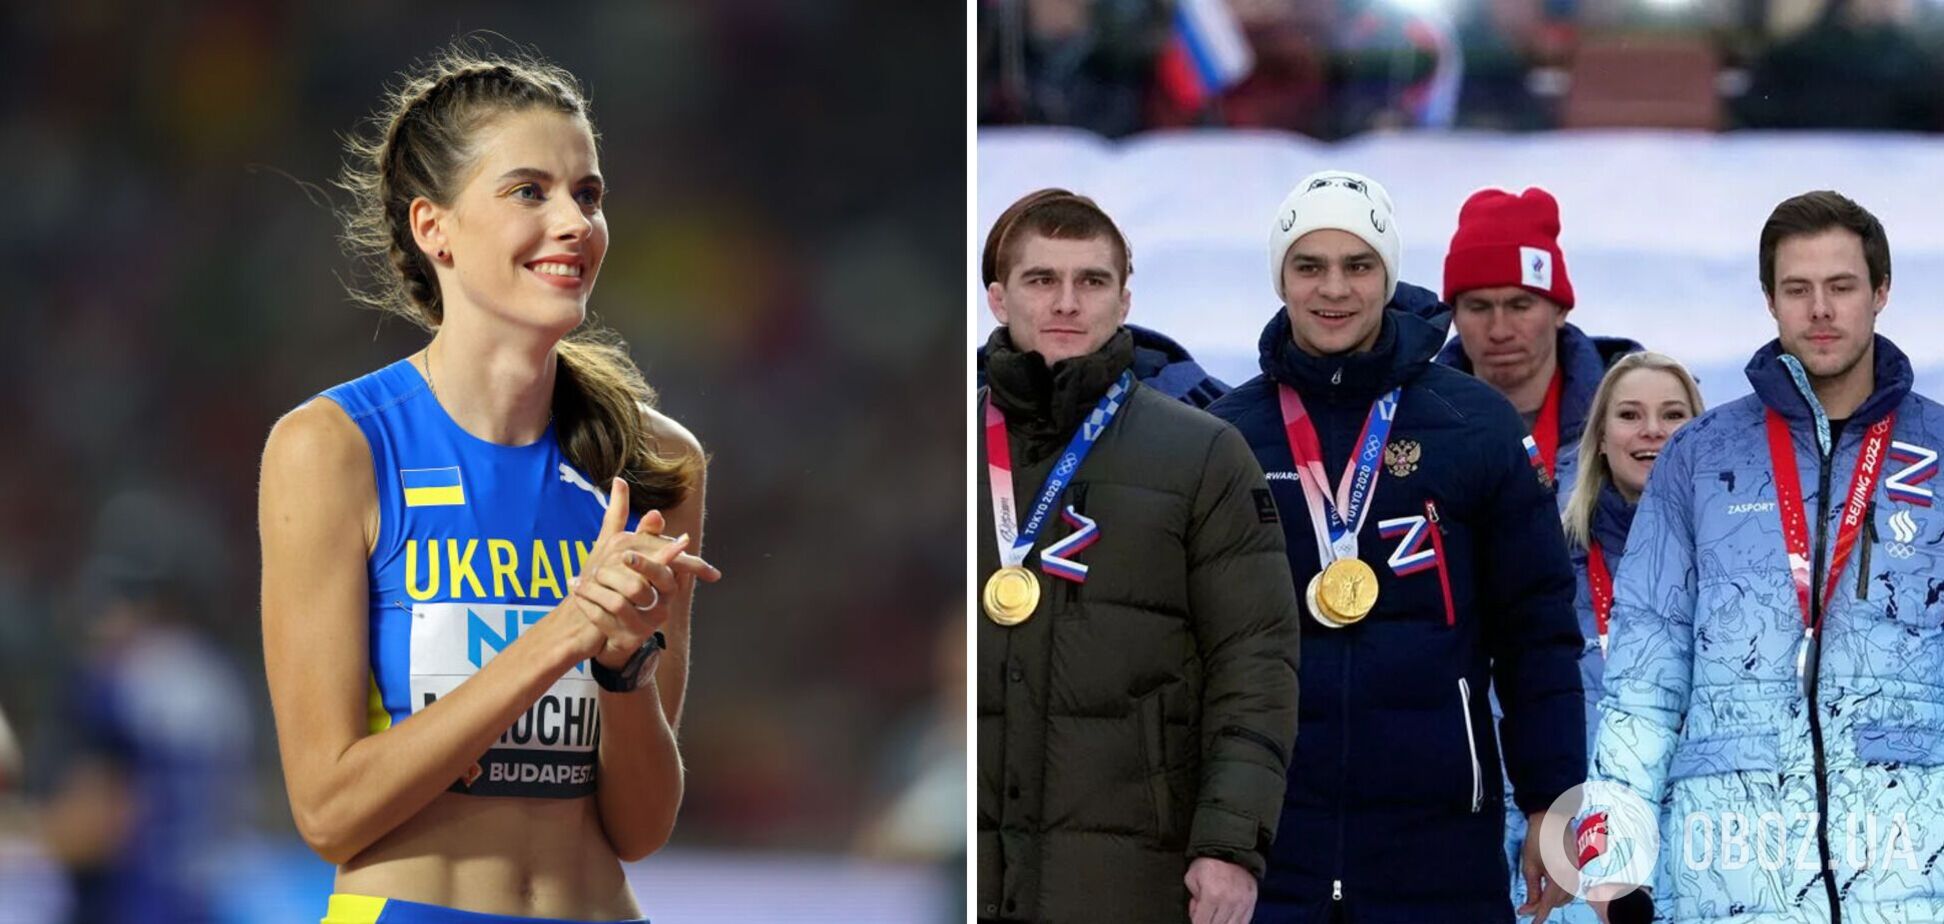 'Бравируя болью за свой народ': росСМИ 'разоблачили' украинскую чемпионку мира, которая призвала к полному отстранению россиян